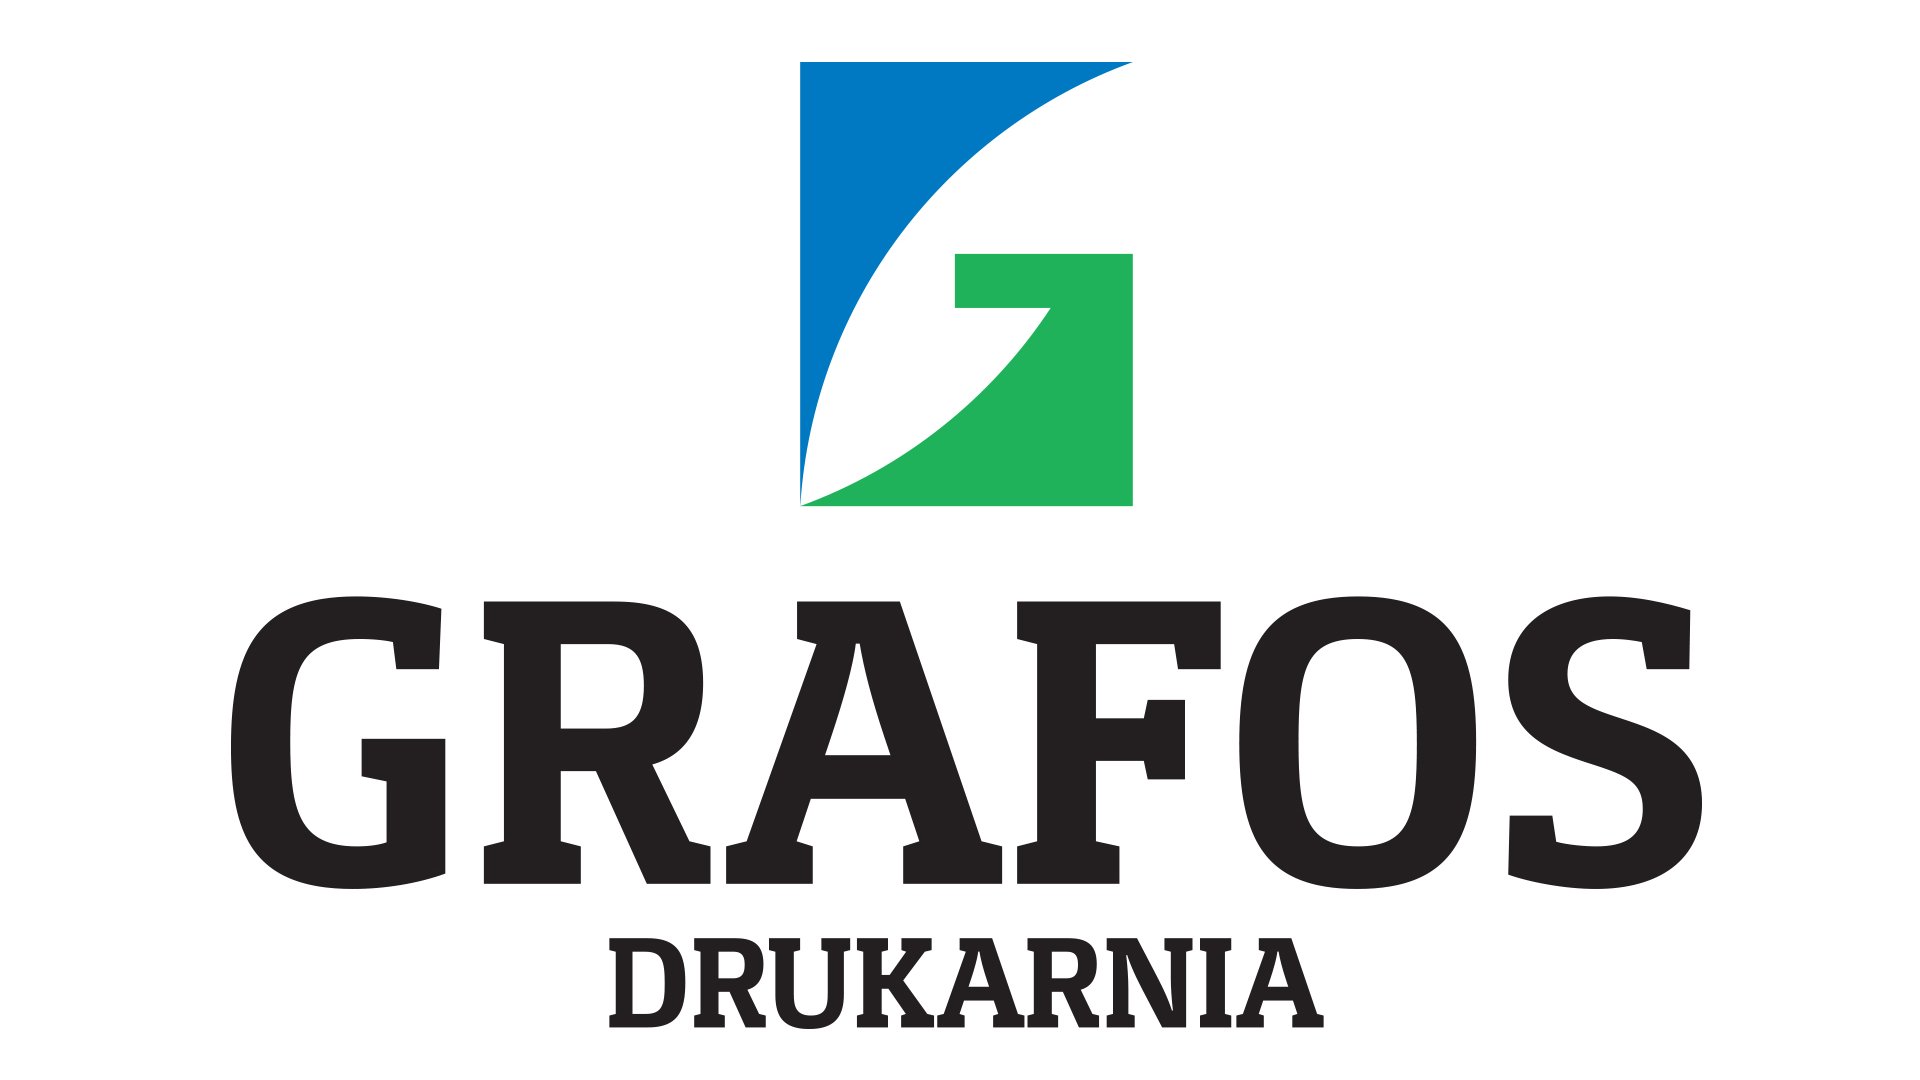 W akcji wzięło udział 8 firm, między innymi drukarnia Grafos